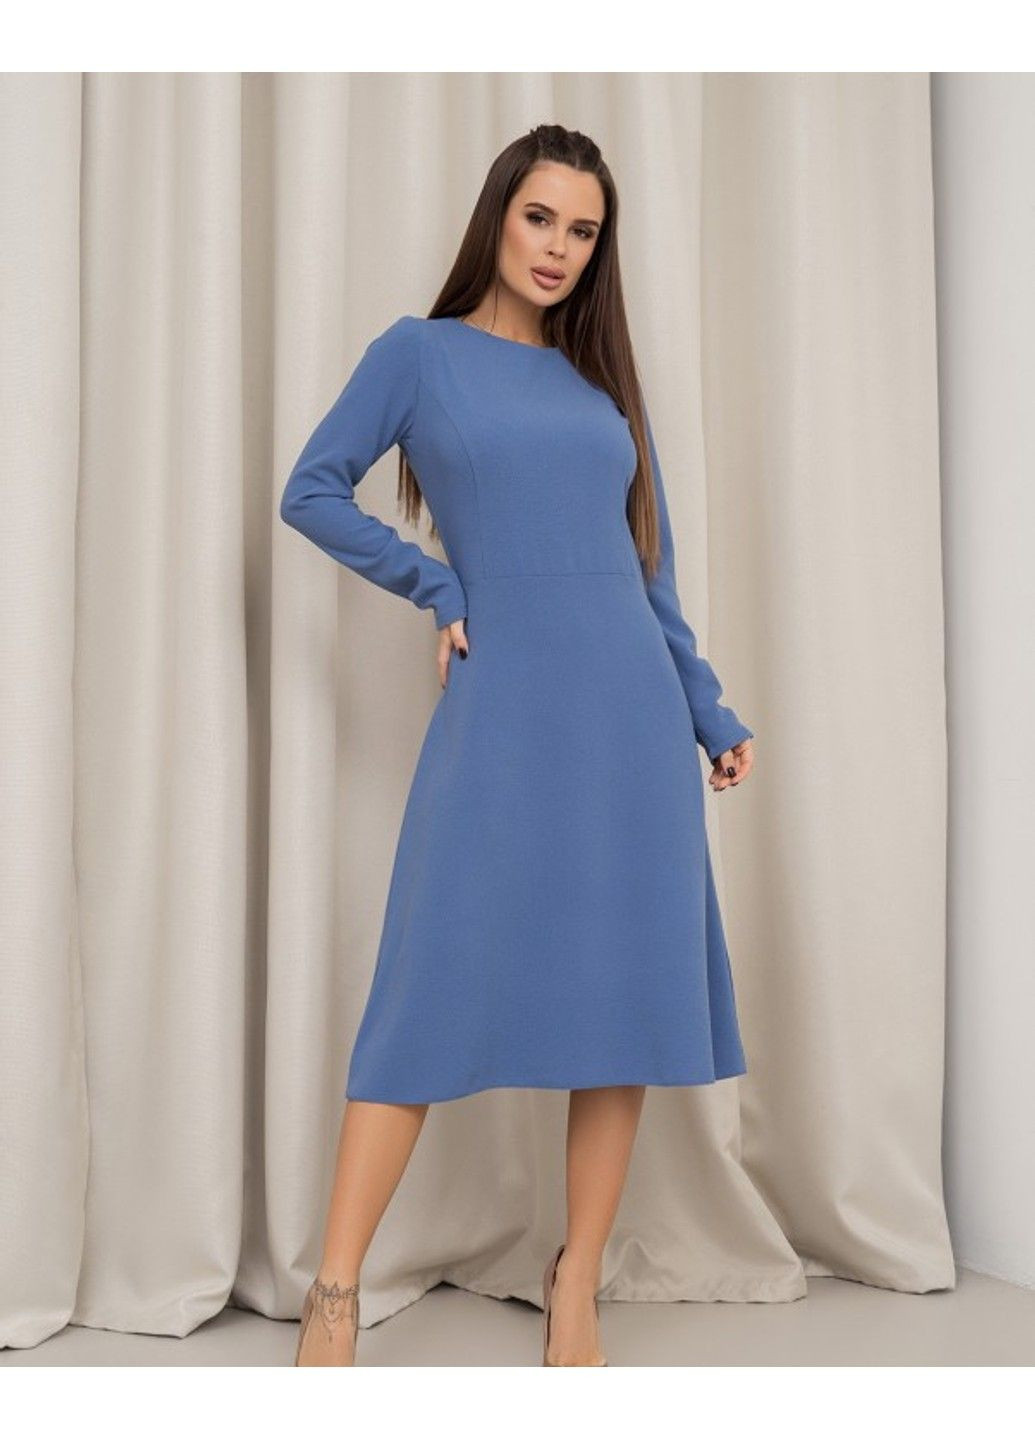 Голубое деловое платье 14452 l голубой ISSA PLUS